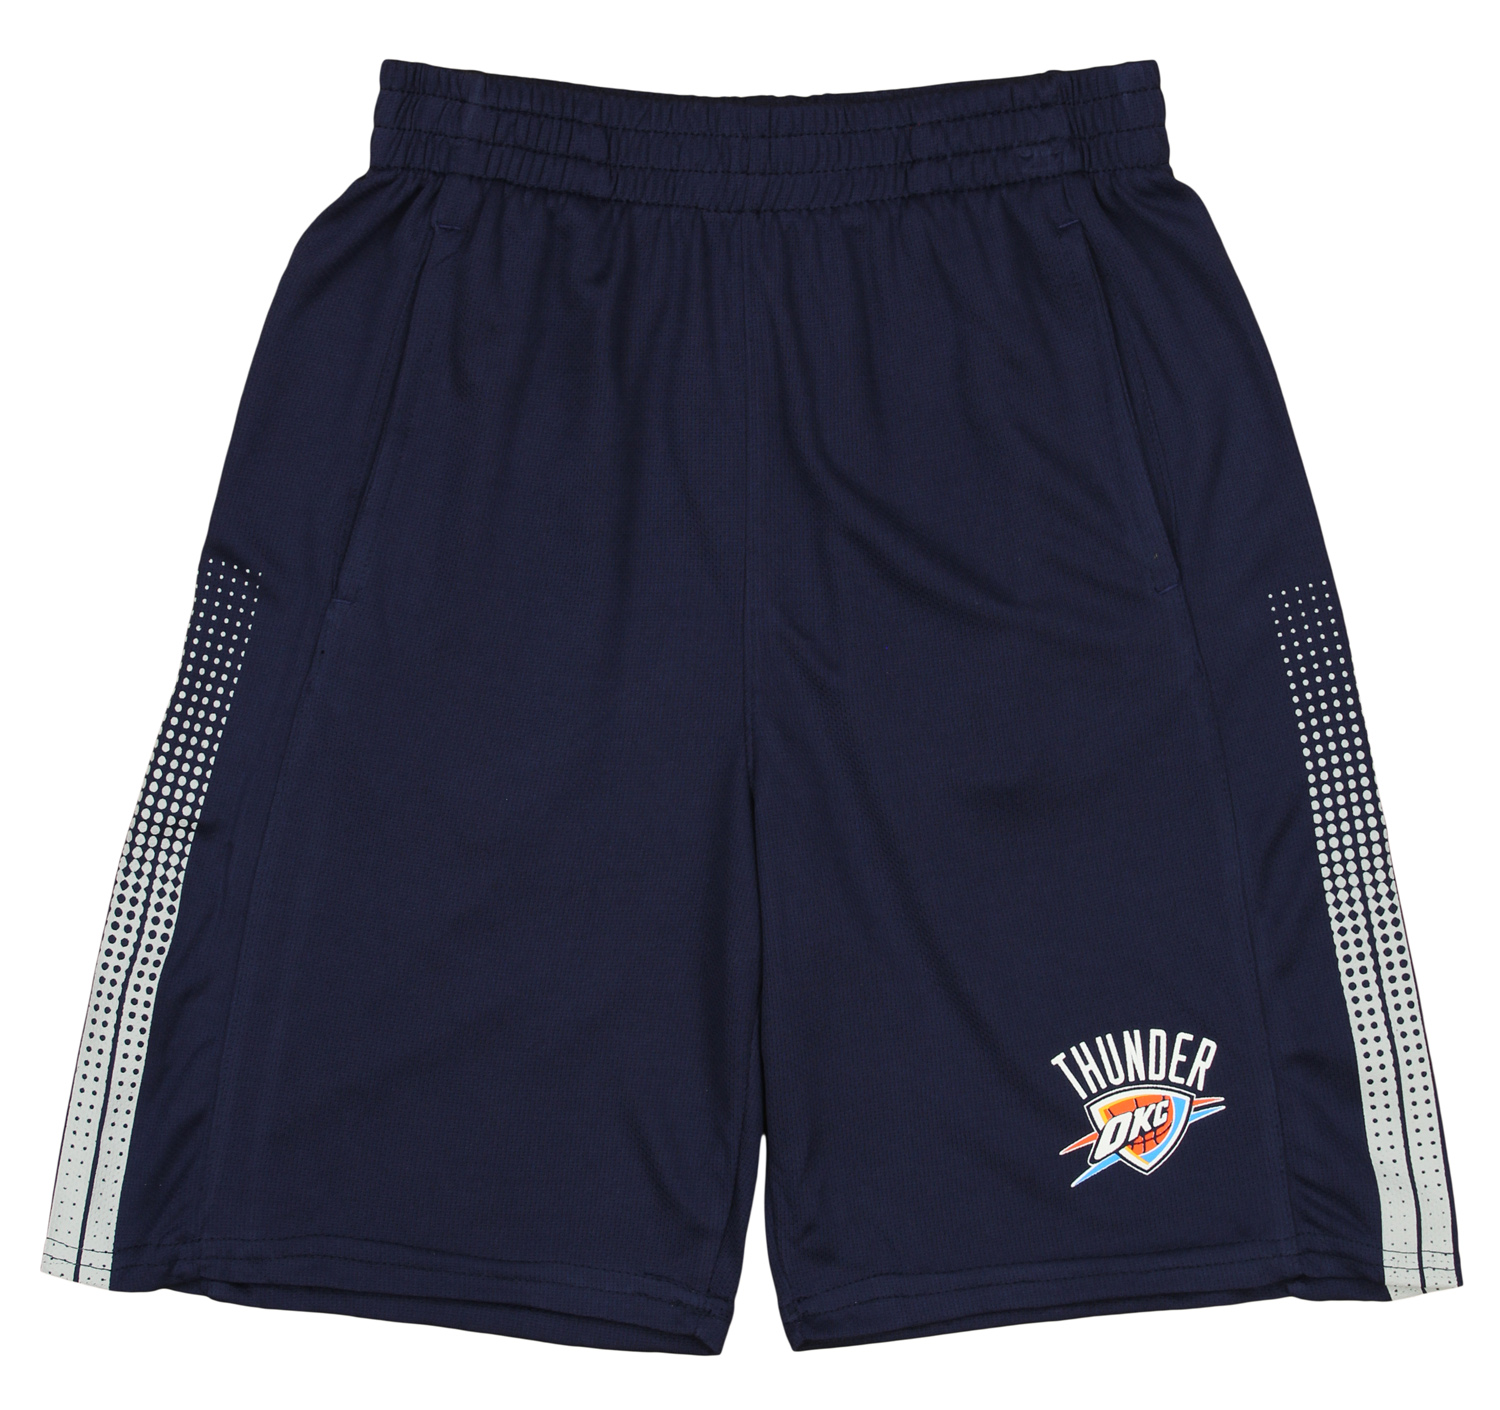 Outerstuff NBA Youth Oklahoma City Thunder Slam Dunk Shorts, Navy | eBay